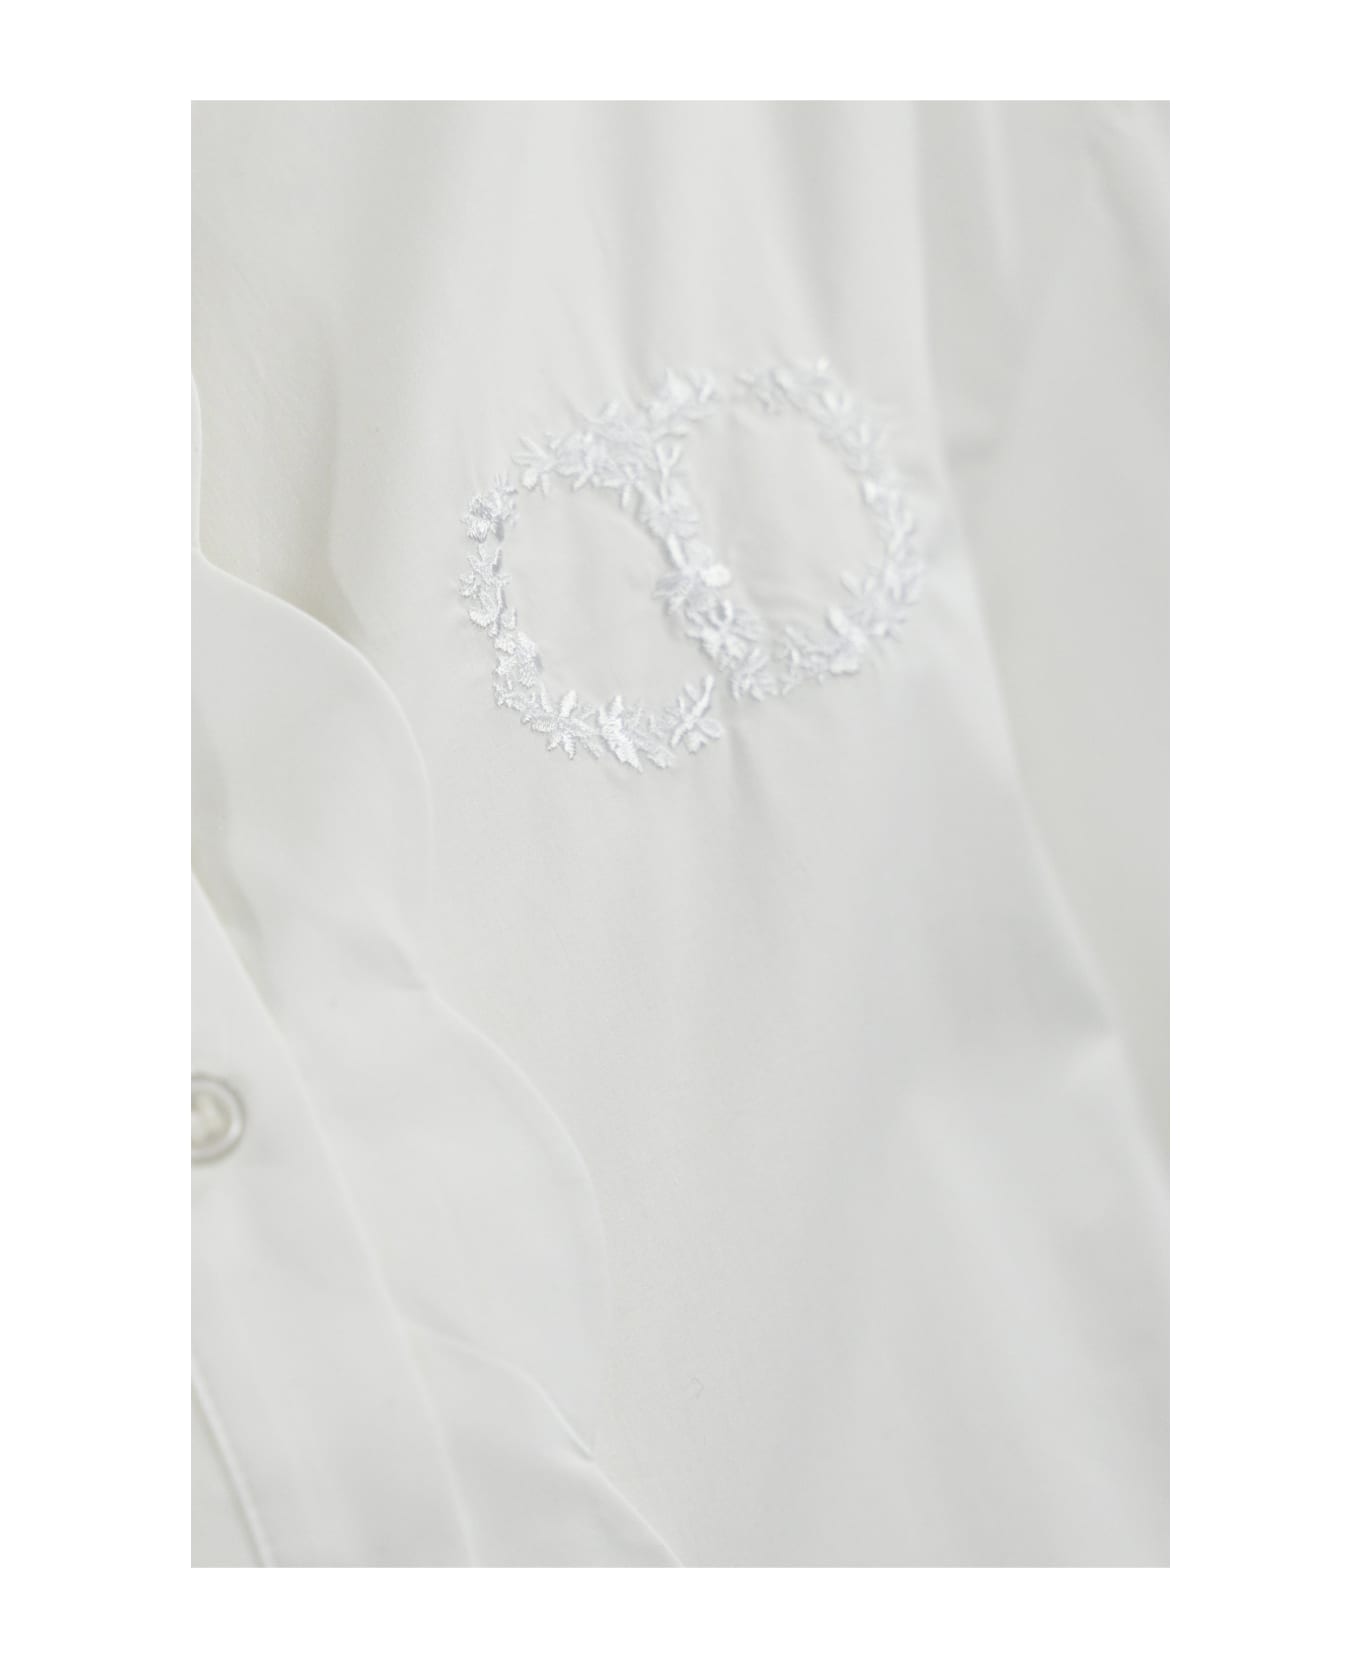 TwinSet Scalloped Poplin Shirt - Bianco